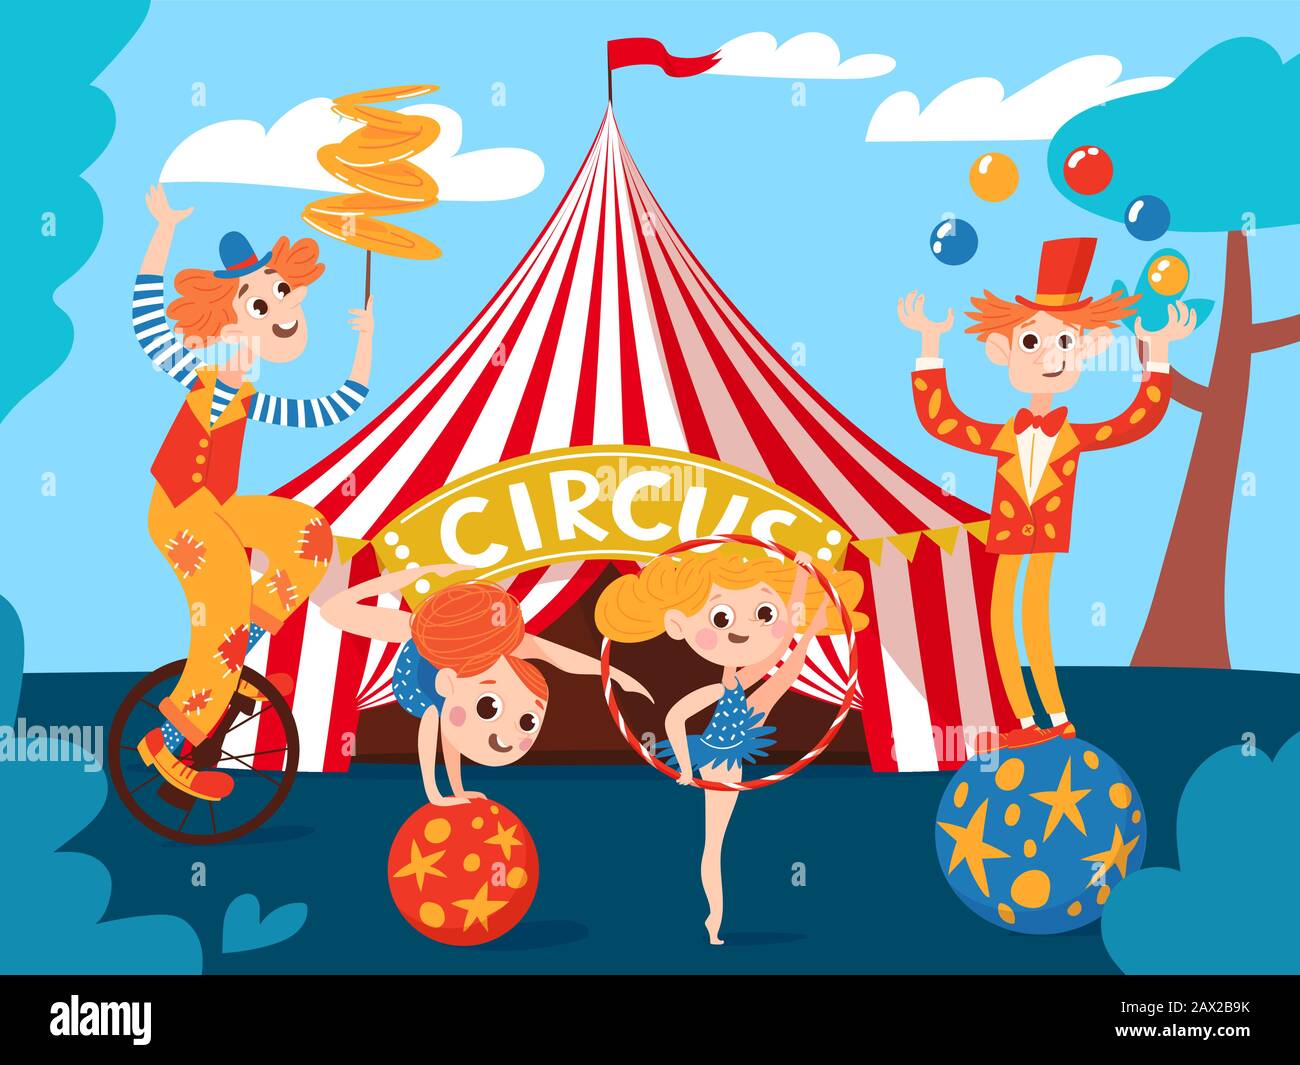 Zirkushintergrund mit hübschen Zirkusfiguren Stock Vektor